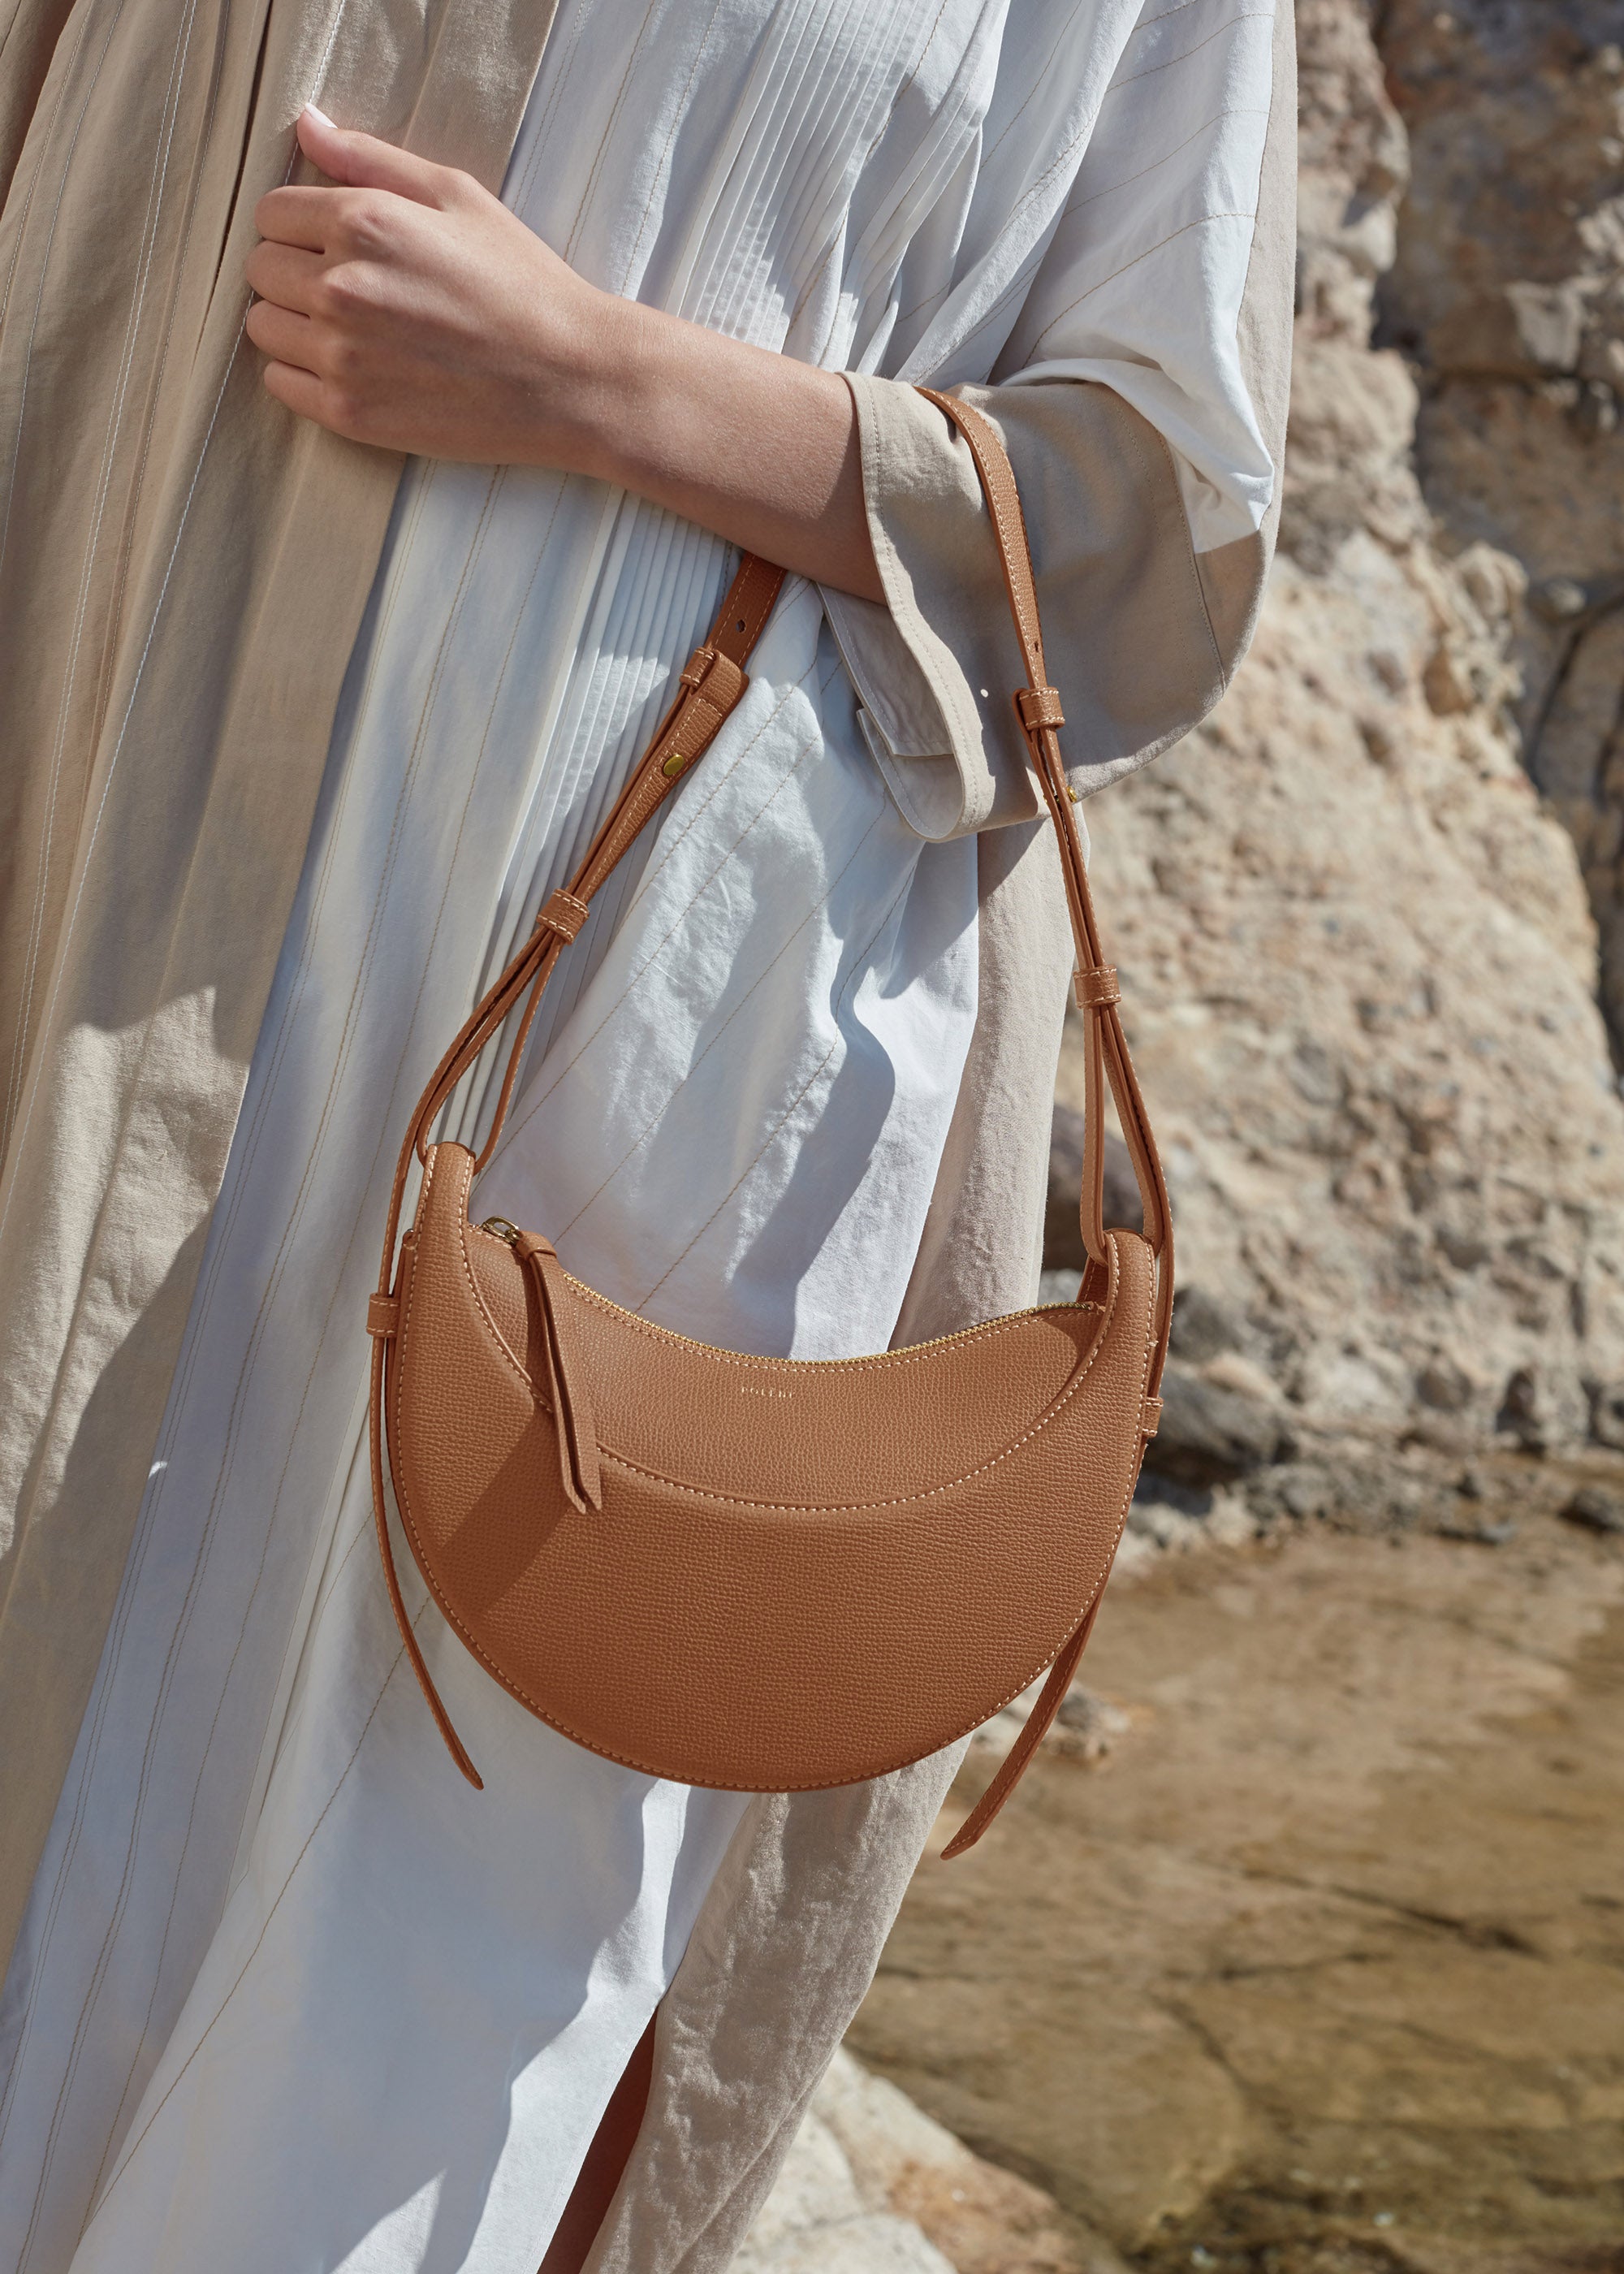 Polène | Bag - Numéro Dix - Monochrome Camel Textured leather